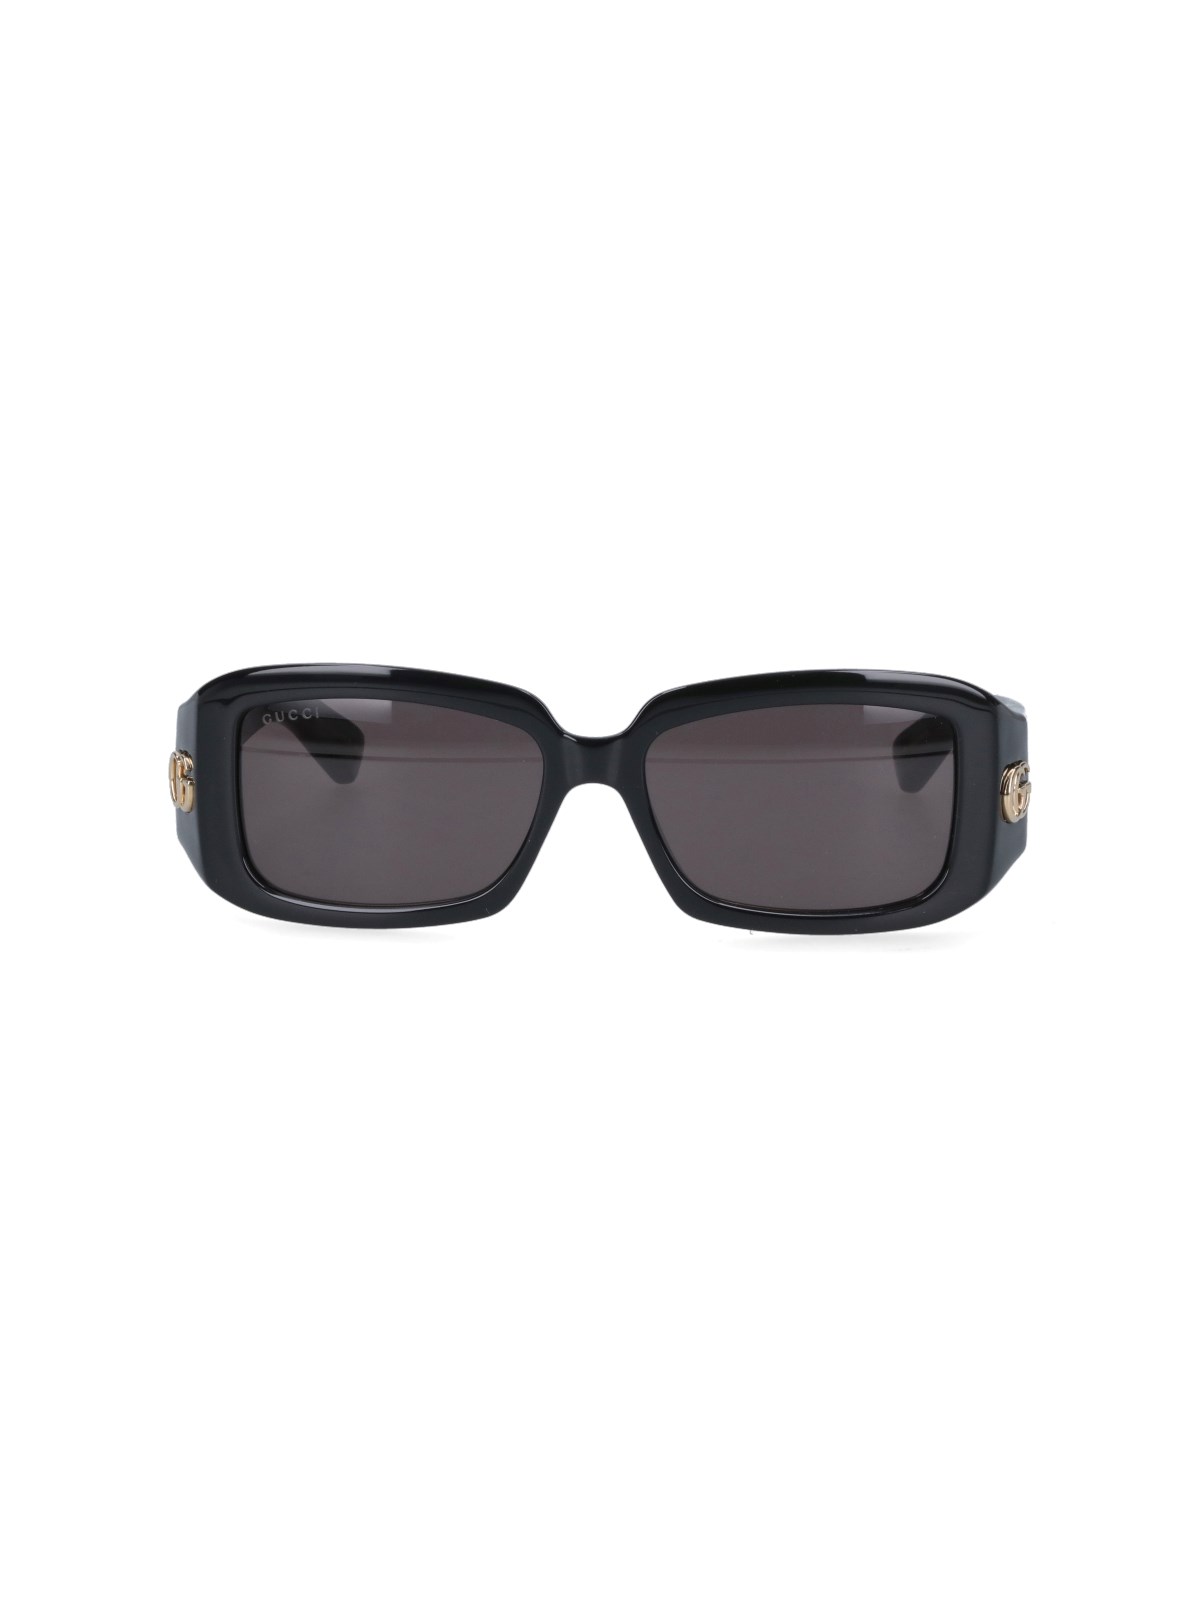 Gucci 'gg' Sunglasses In Black  